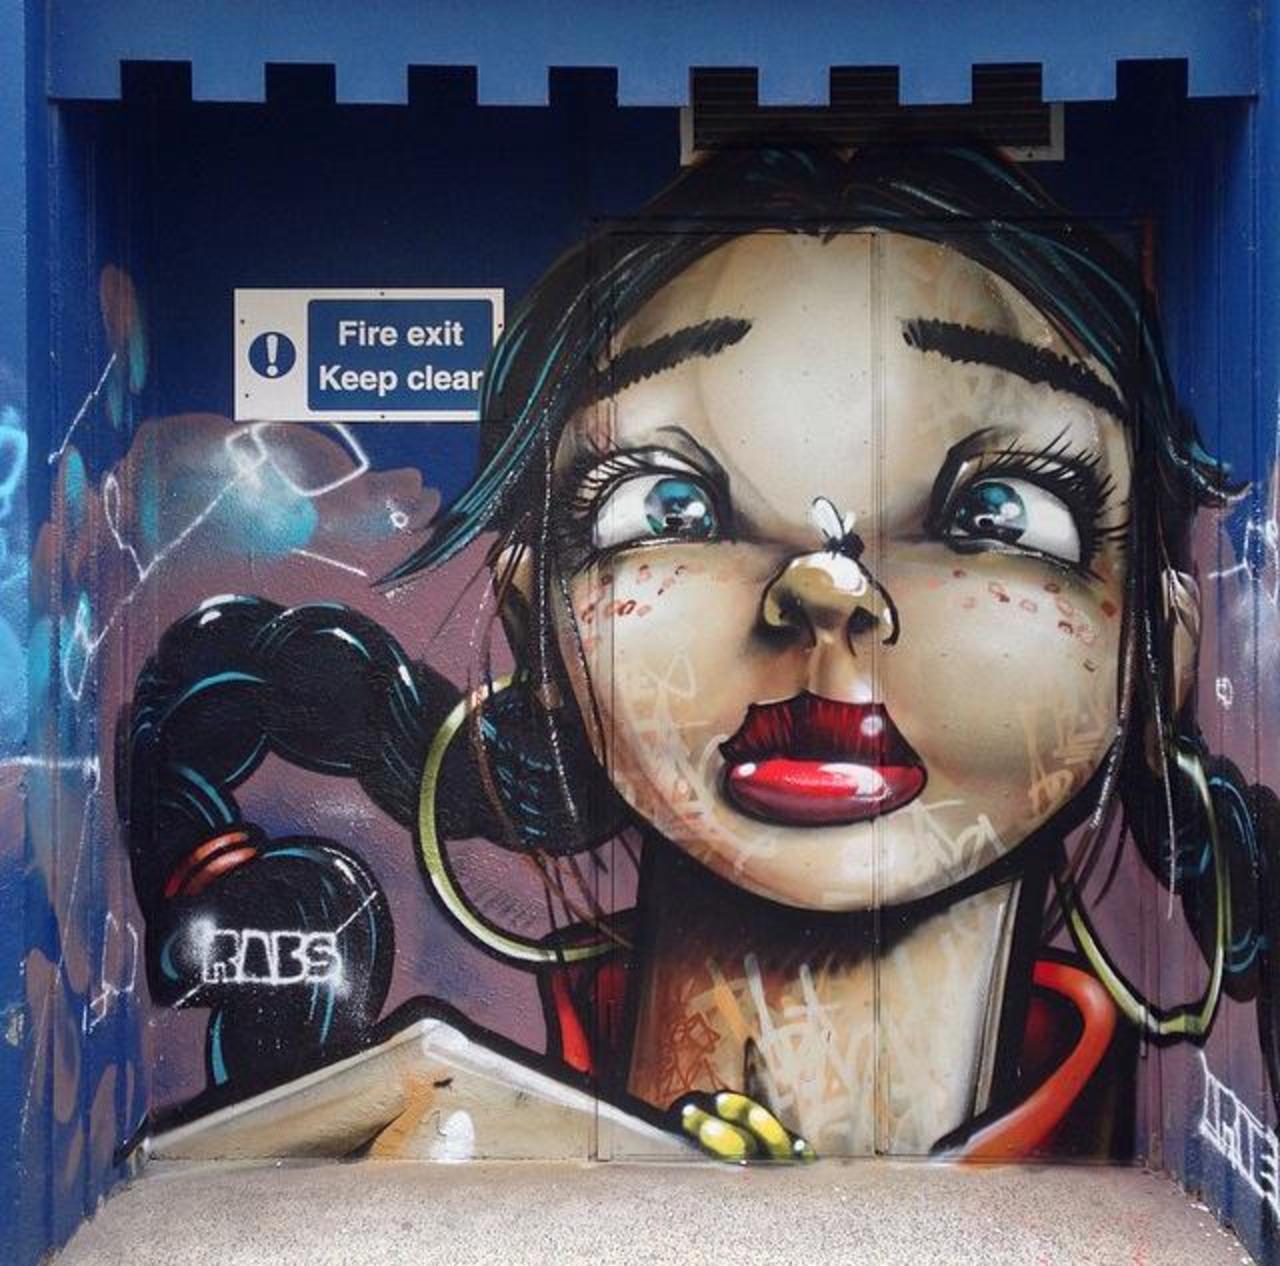 New Street Art piece by • aroe_msk 

#art #arte #graffiti #streetart http://t.co/m6gPBjsOLq